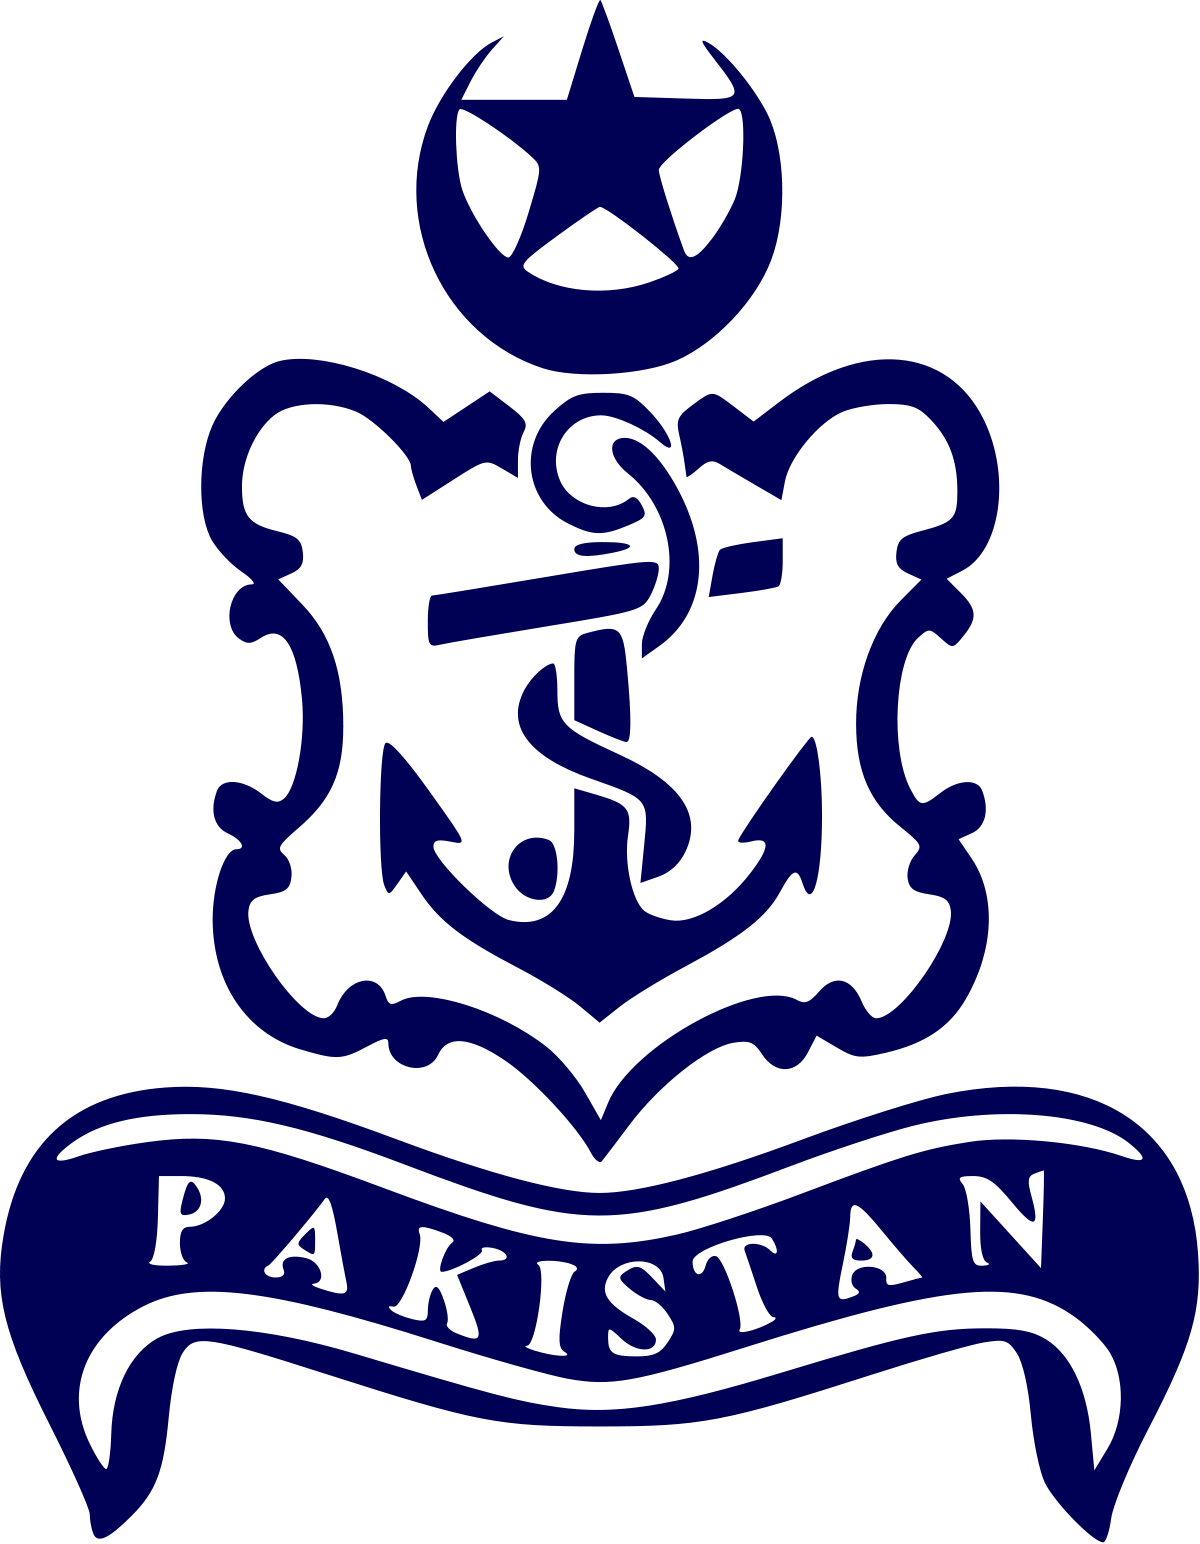 Pakistan Navy - Wikipedia